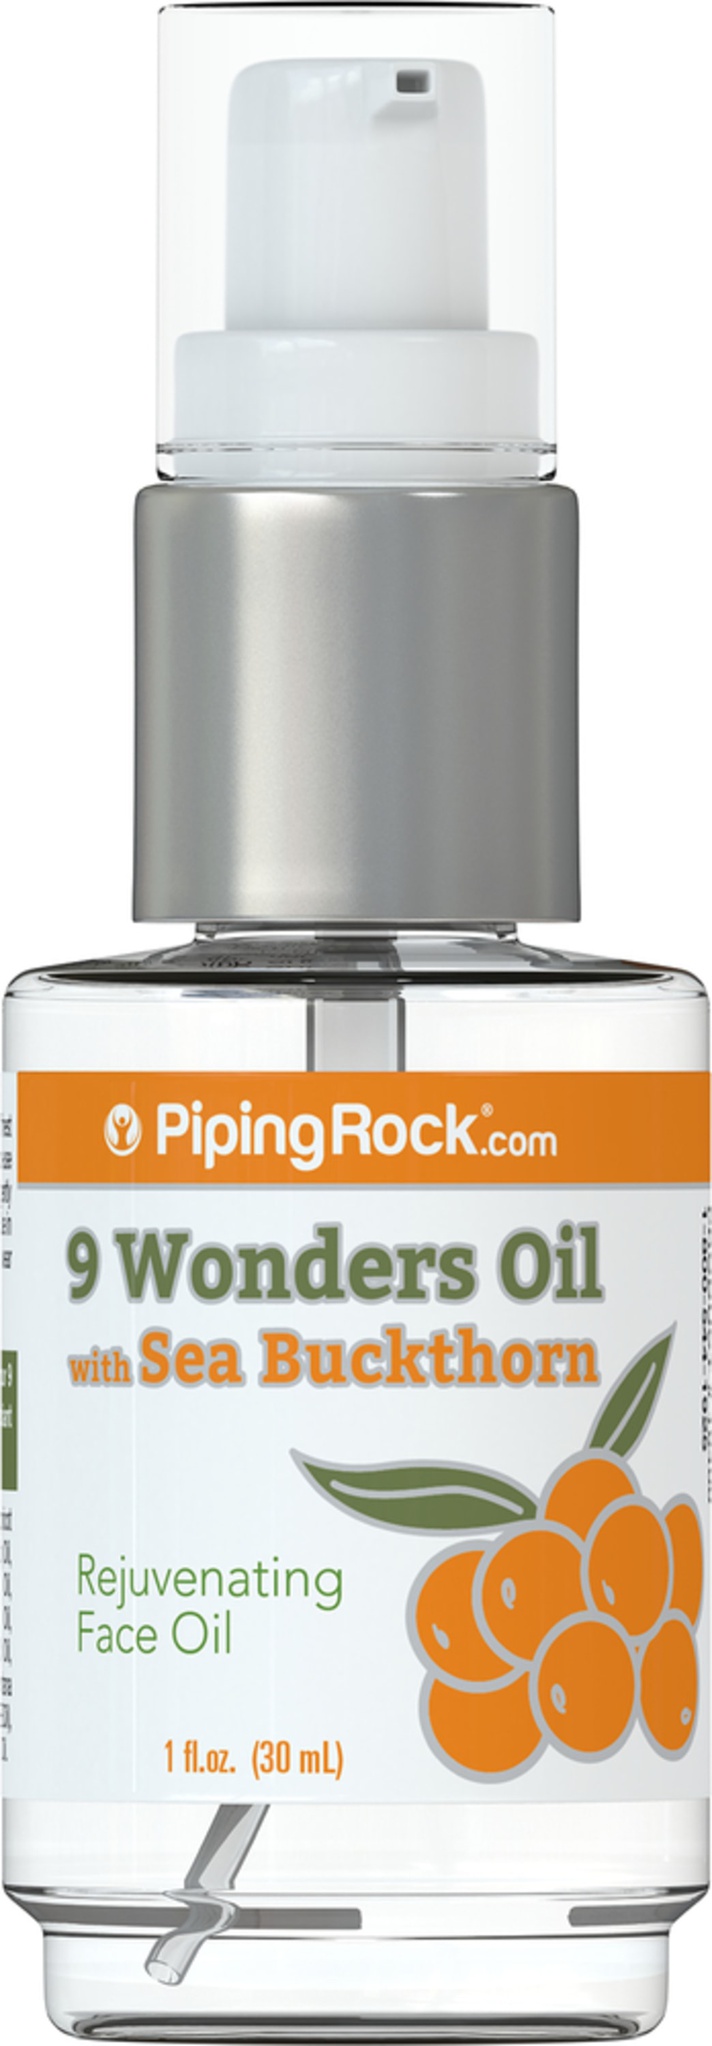 Piping rock 9 Wonders Oil